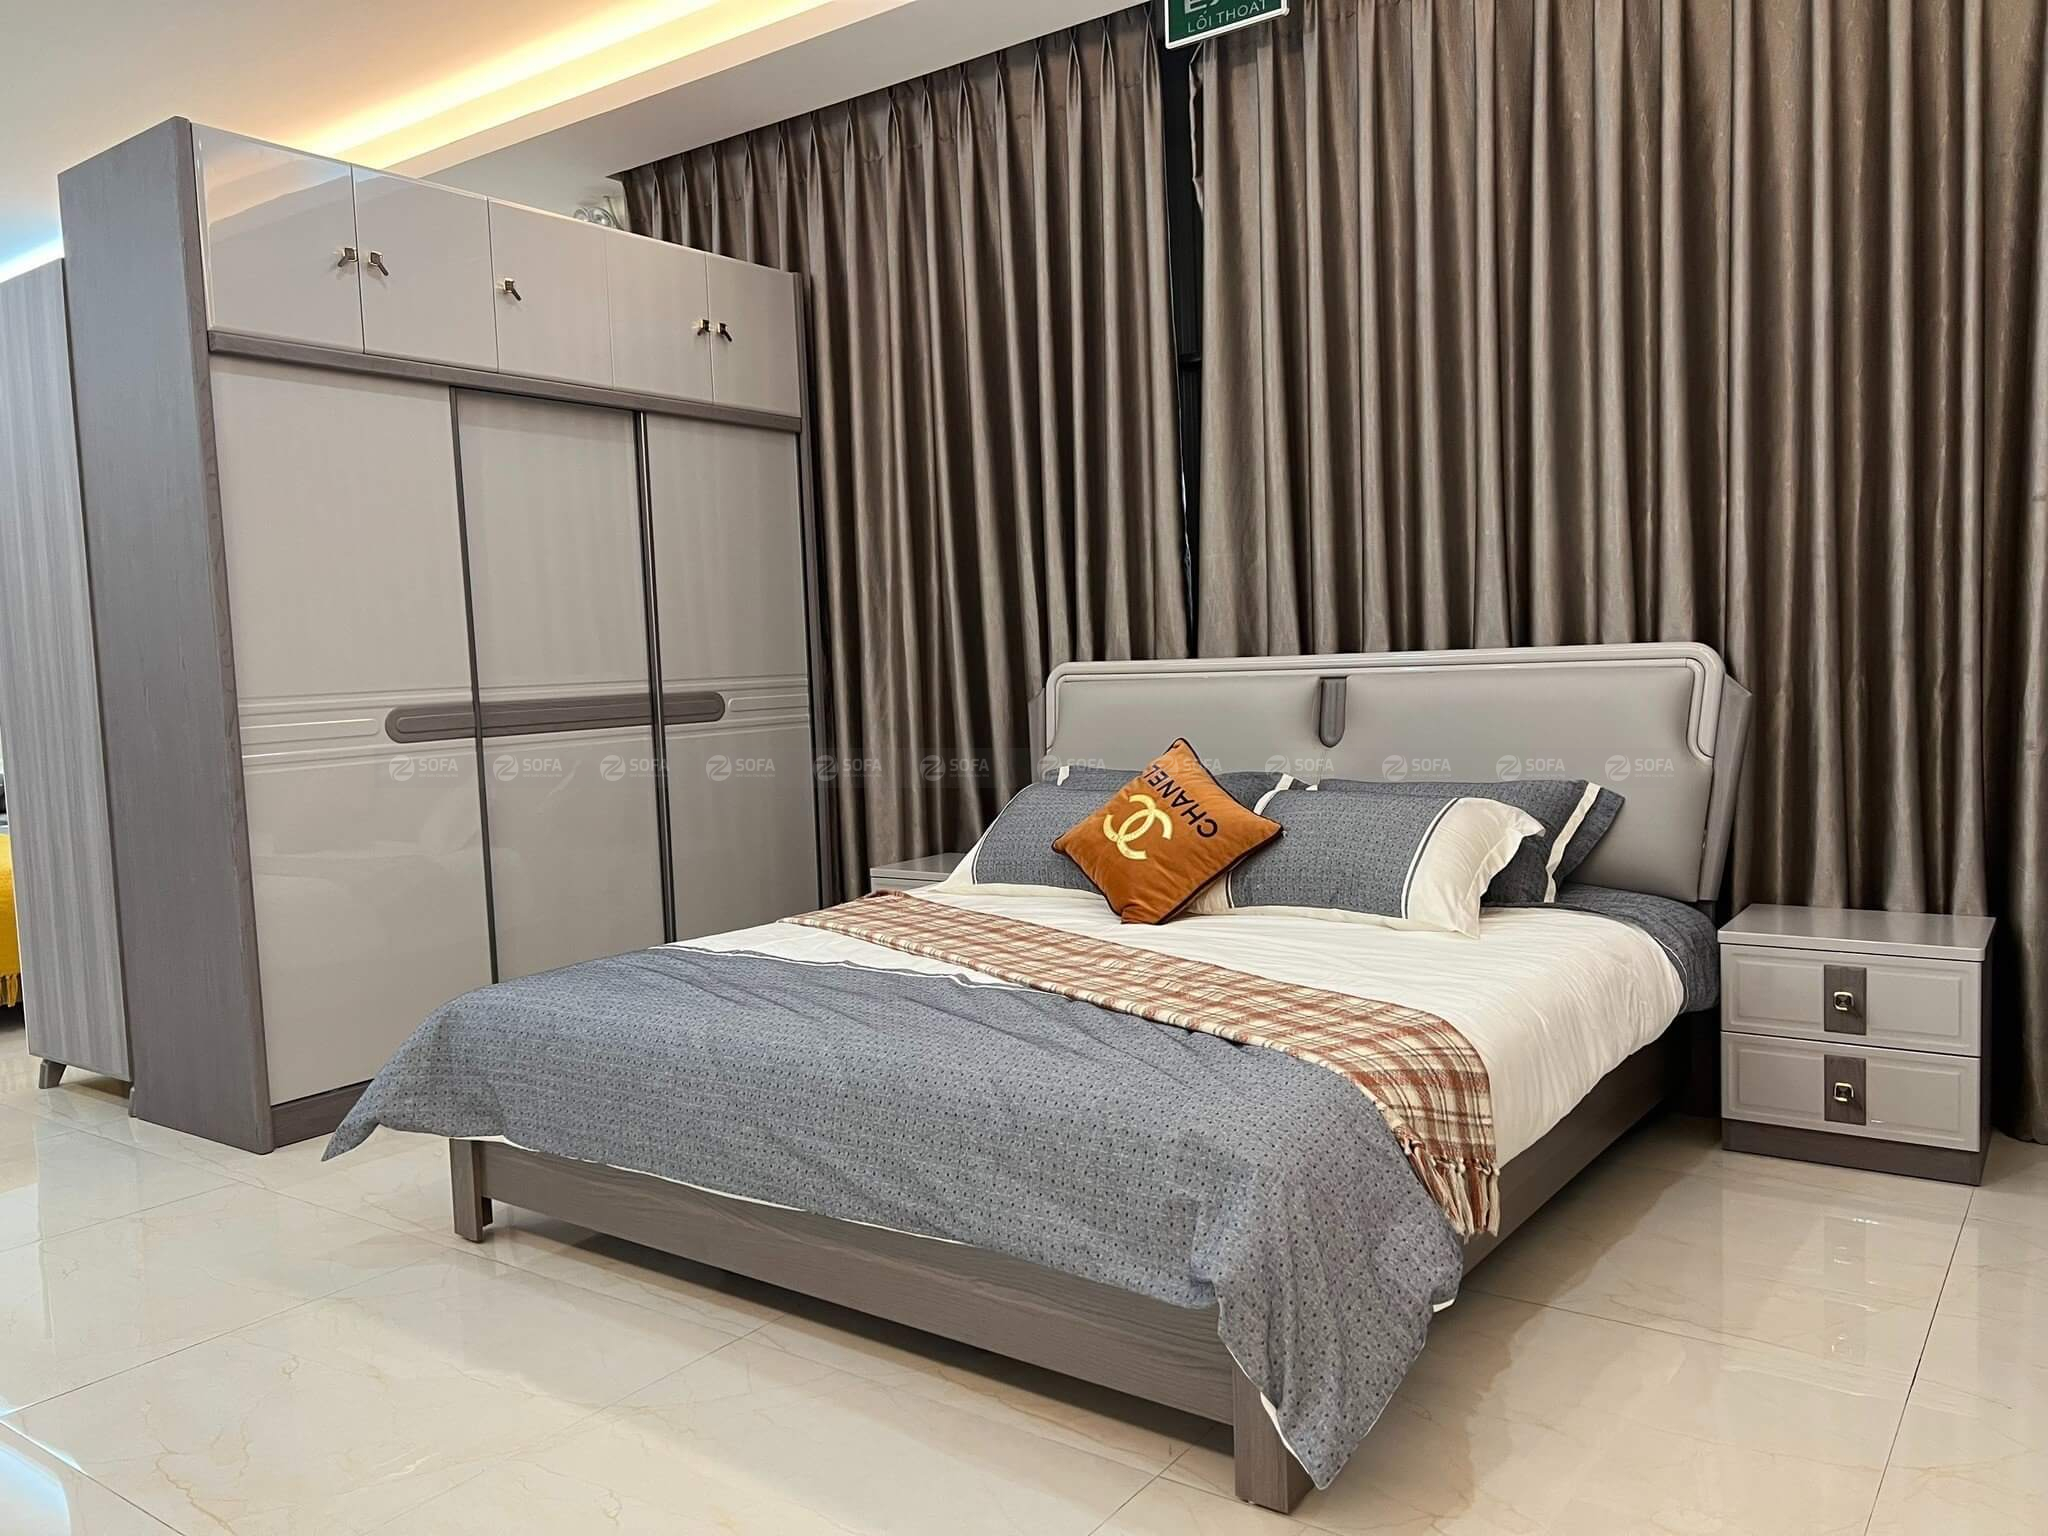 Chọn mua giường ngủ ở Sài Gòn tốt nhất